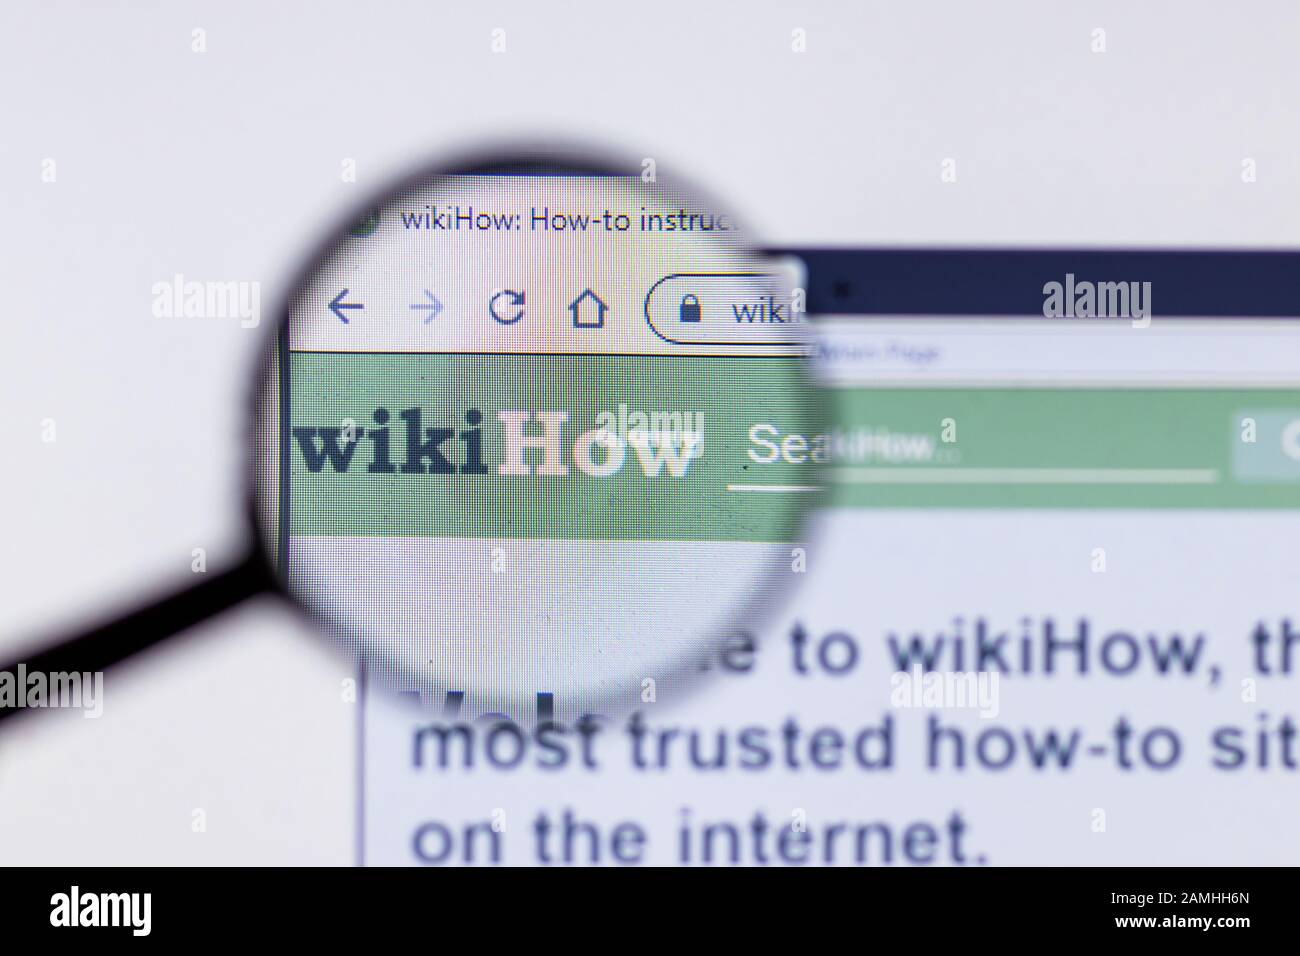 Saint-Petersburg, Russie - 10 janvier 2020: Page du site Web WikiHow sur un écran d'ordinateur portable avec logo, éditorial illustratif Banque D'Images